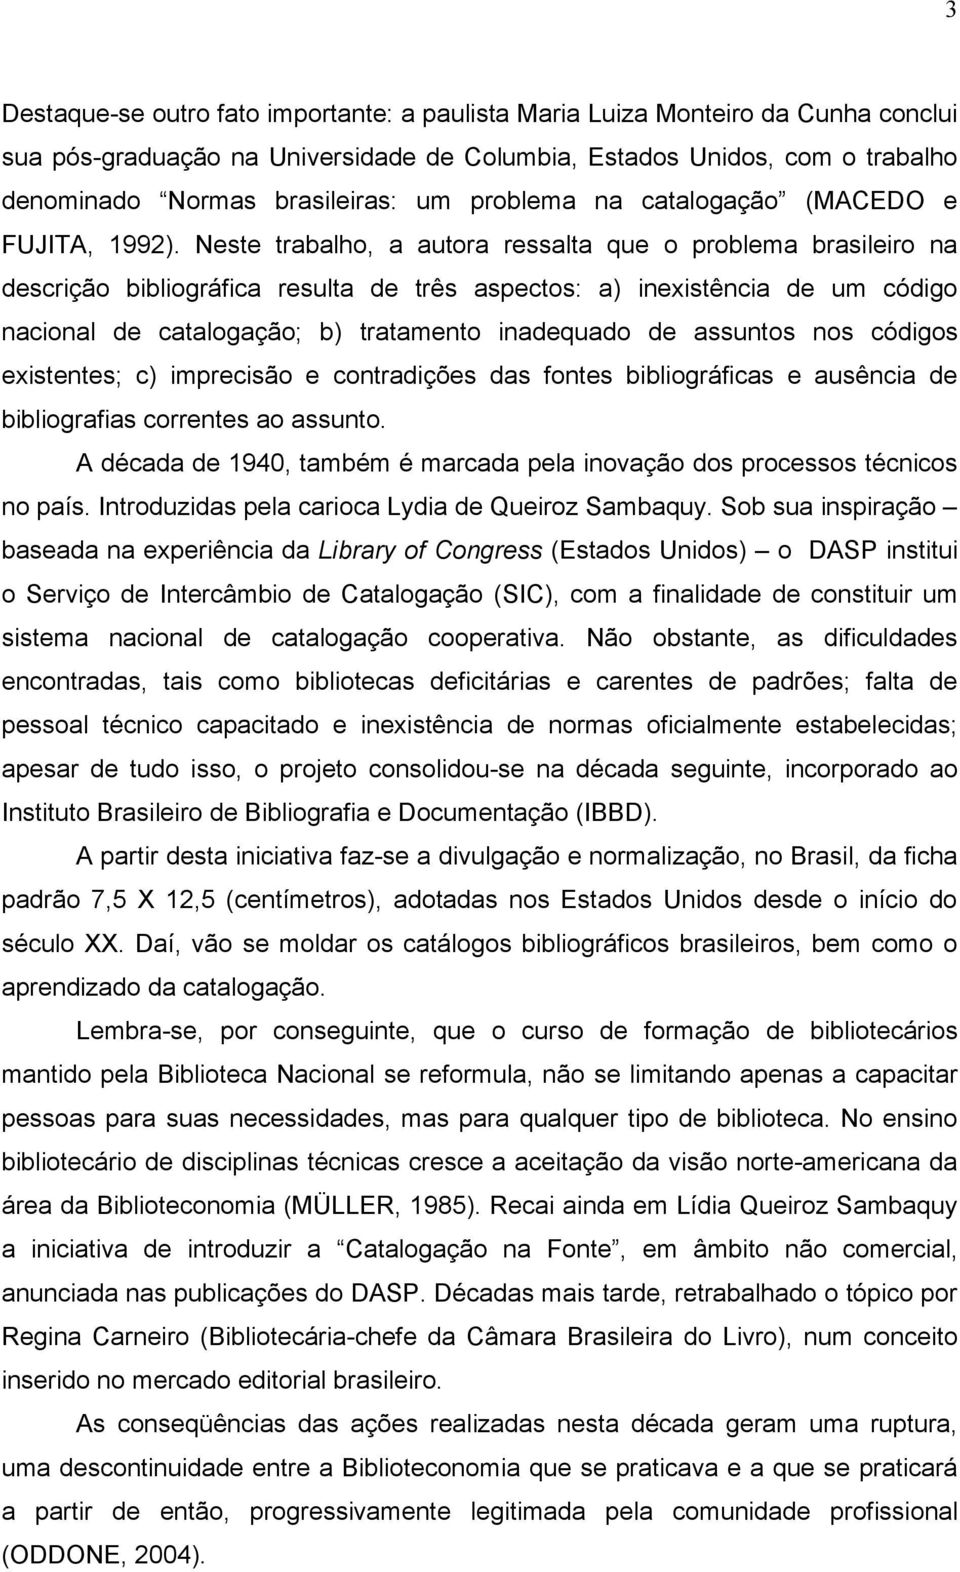 Neste trabalho, a autora ressalta que o problema brasileiro na descrição bibliográfica resulta de três aspectos: a) inexistência de um código nacional de catalogação; b) tratamento inadequado de